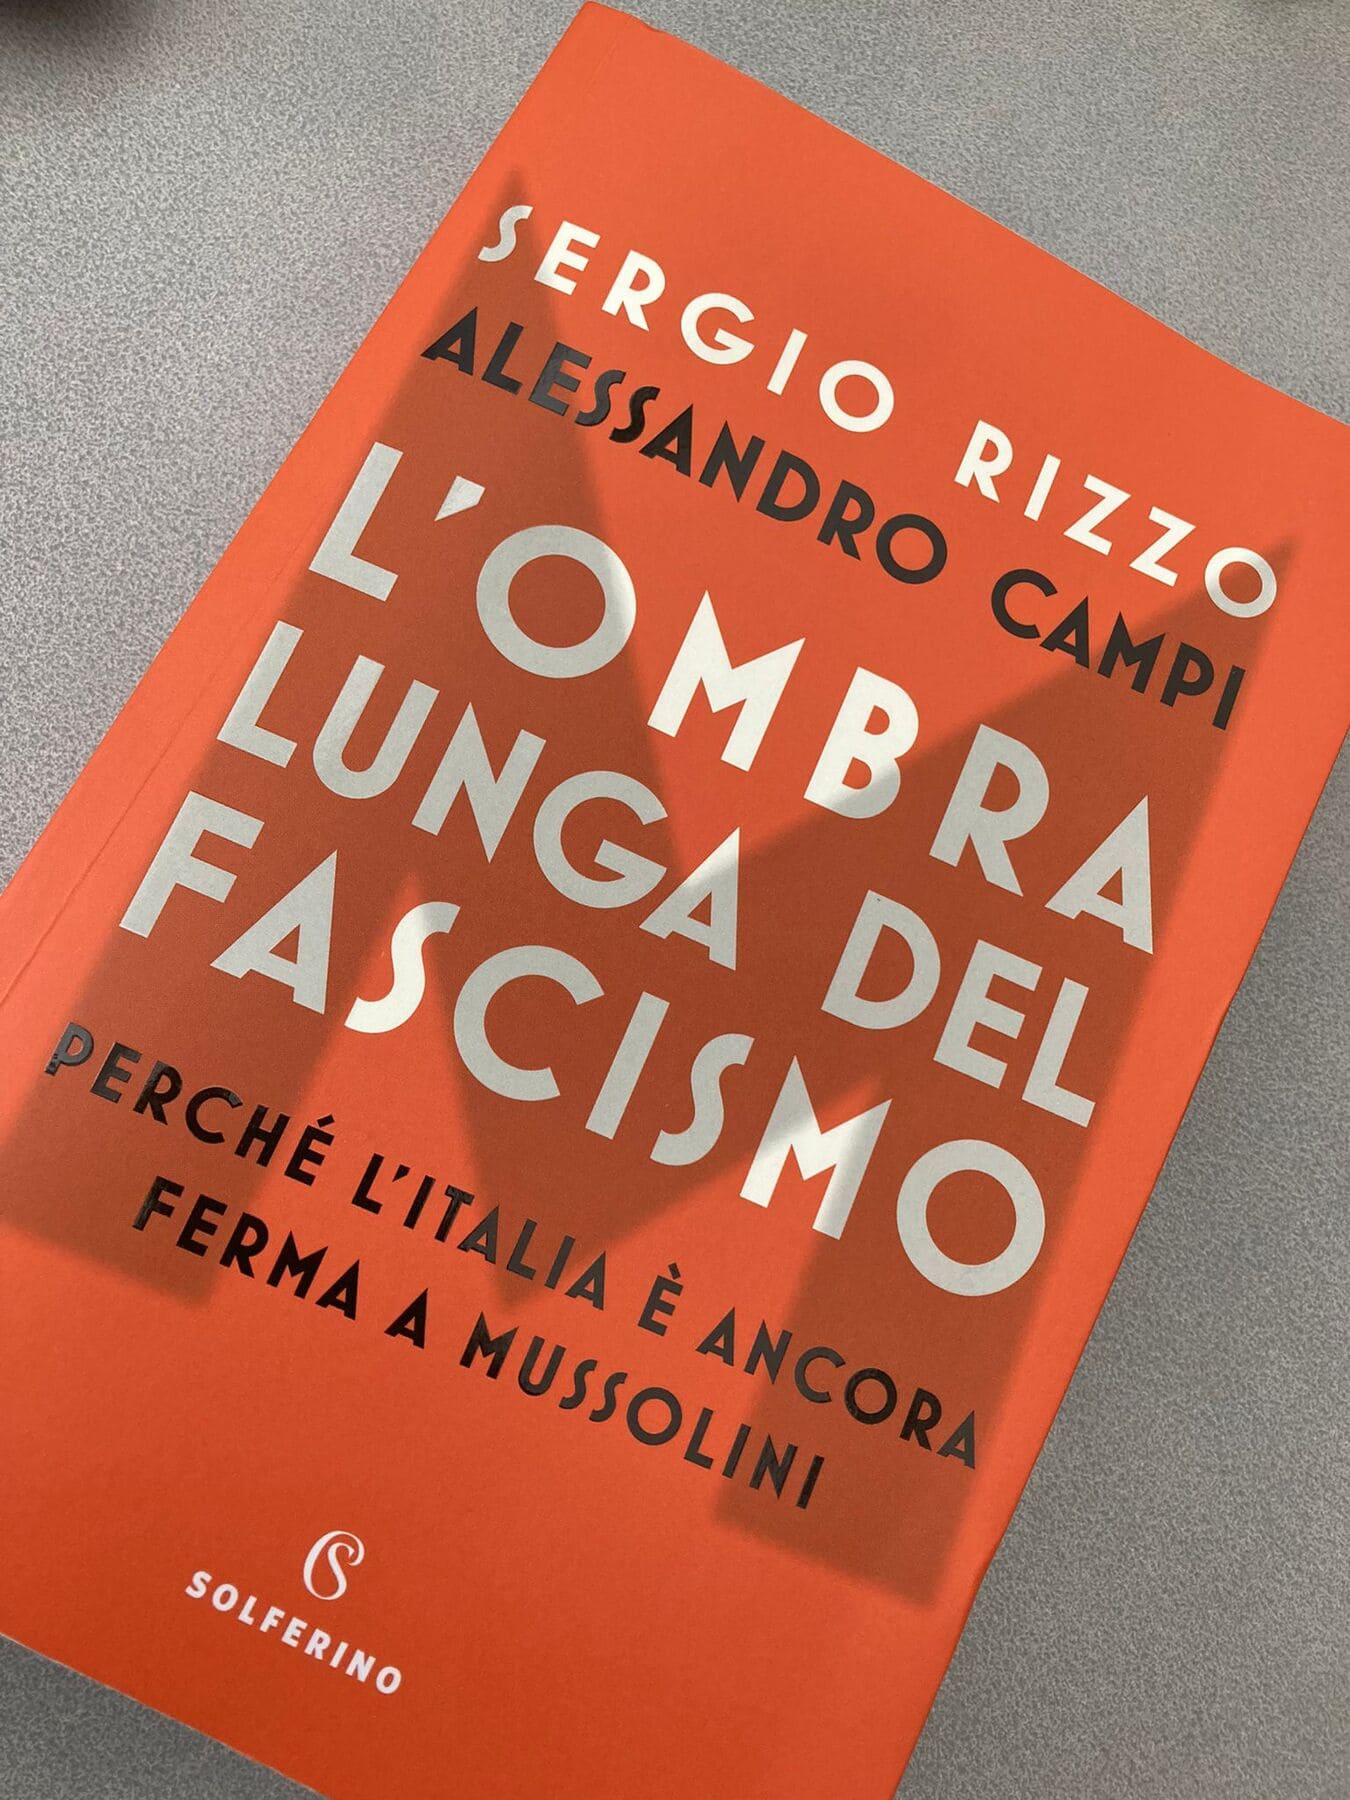 L’ombra lunga del fascismo. Perché l’Italia è ancora ferma a Mussolini. La recensione del lavoro di Rizzo e Campi